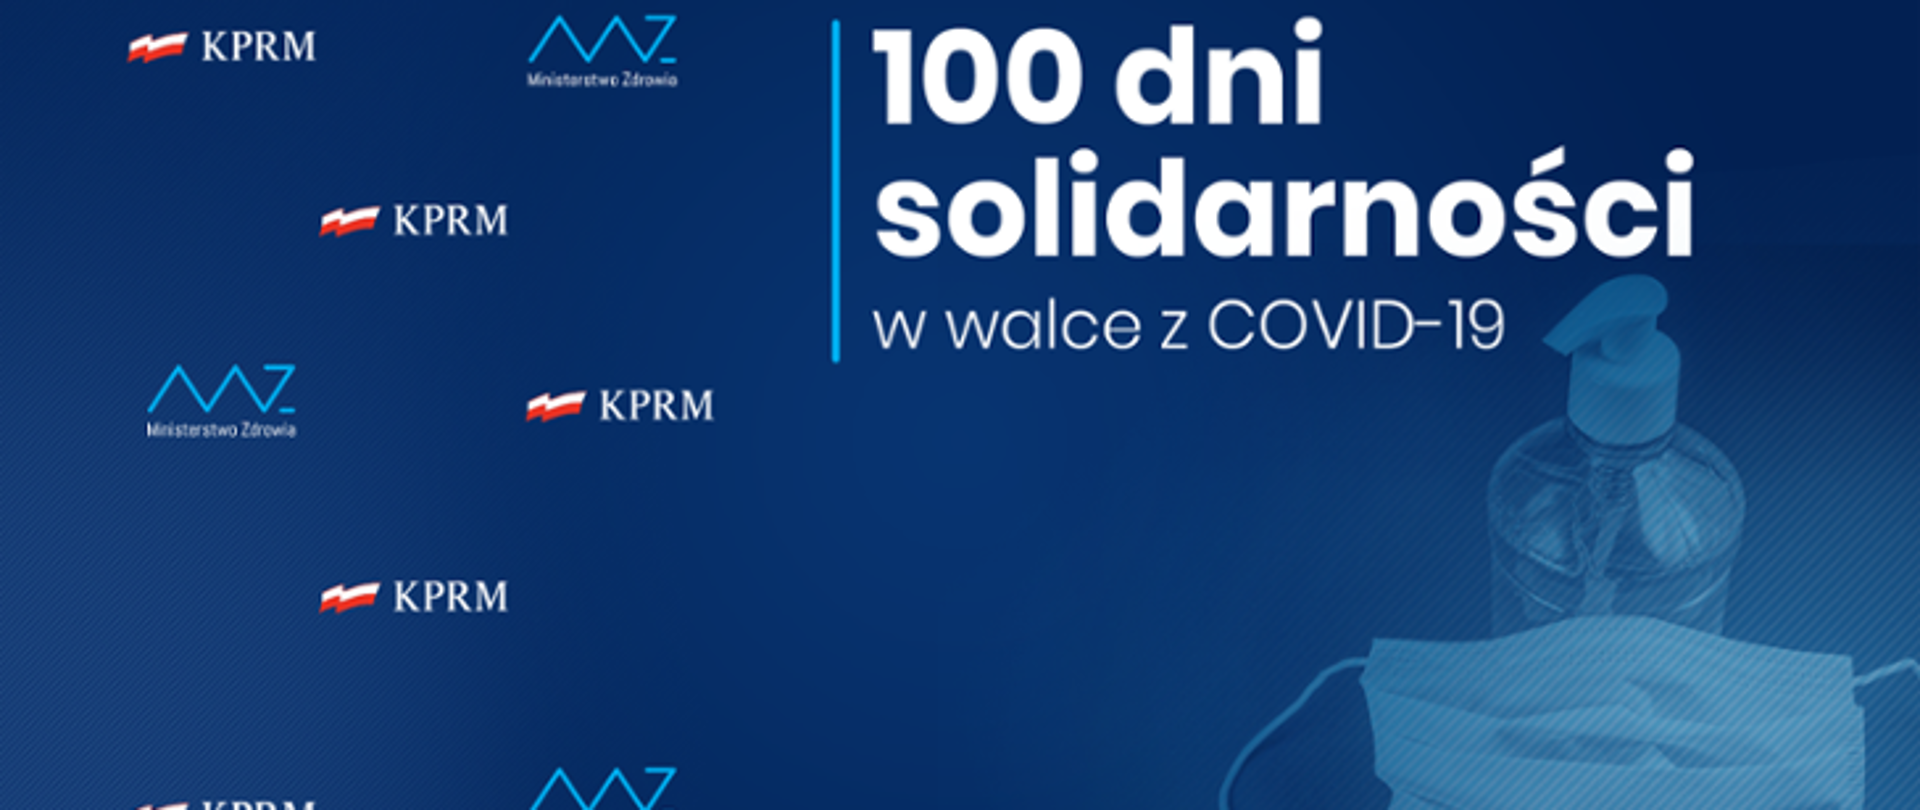 100 dni solidarności w walce z COVID-10. Logo Ministerstwa Zdrowia, Logo Kancelarii Prezesa Rady Ministrów. Pojemnik z płynem do dezynfekcji, maseczka jednorazowa